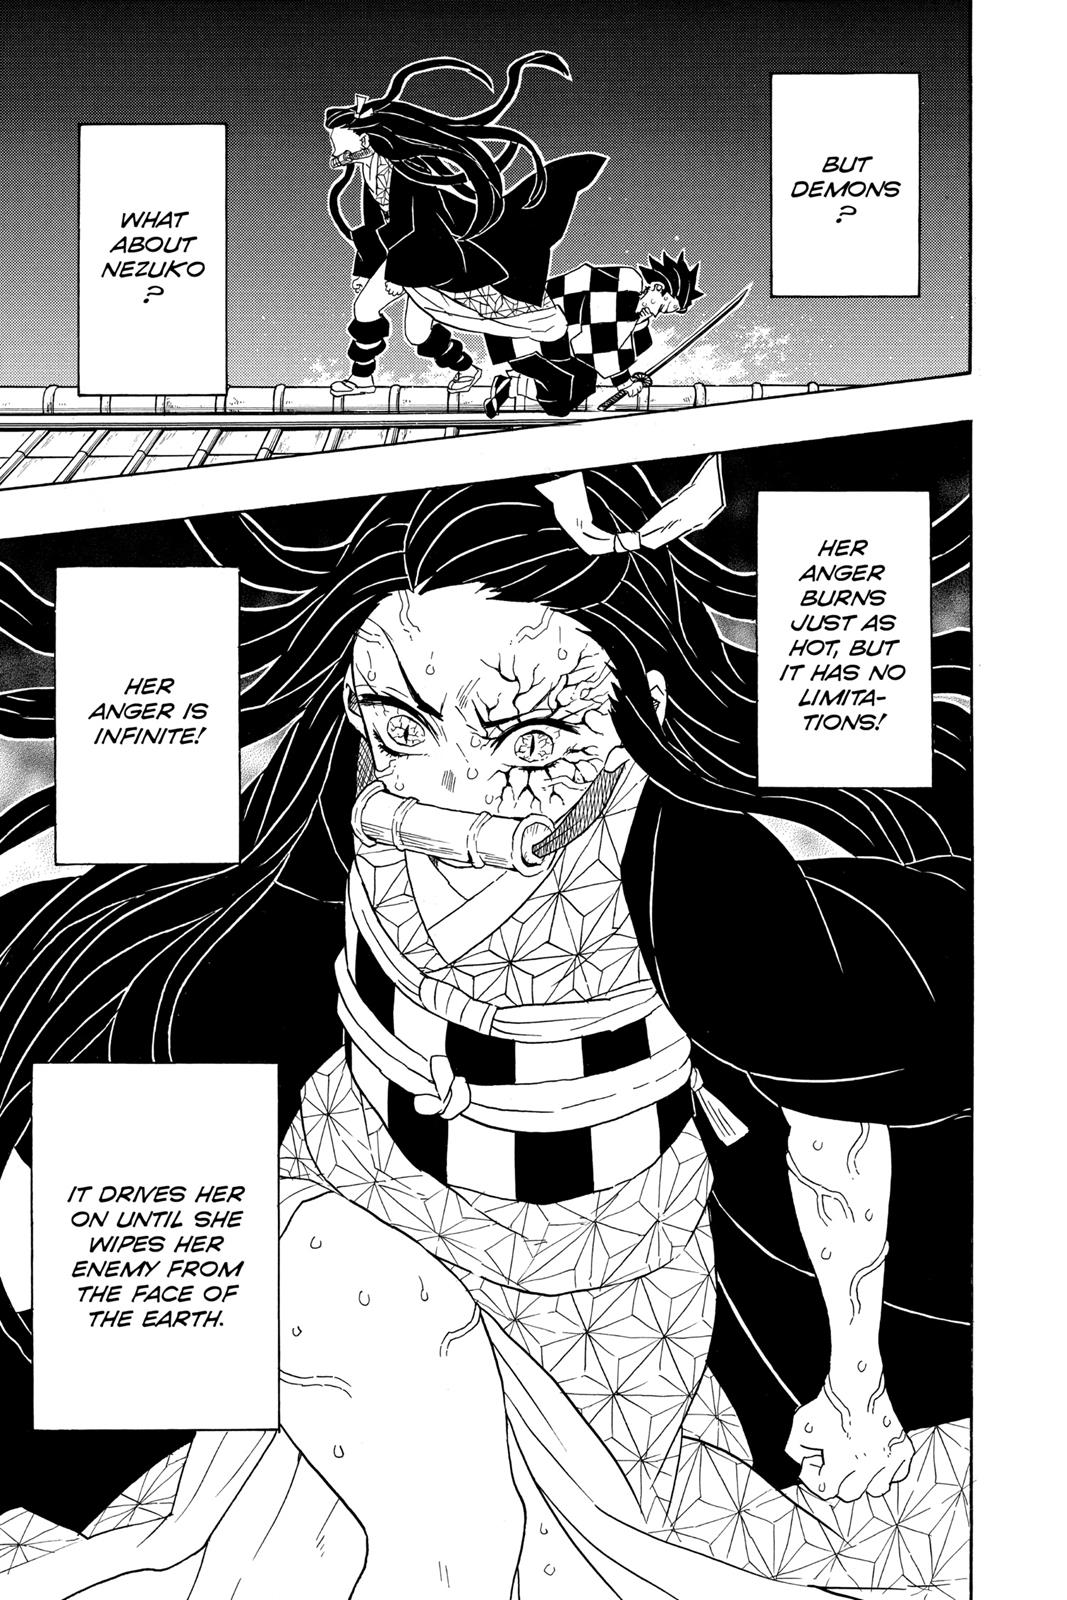 Demon Slayer Manga Manga Chapter - 82 - image 19